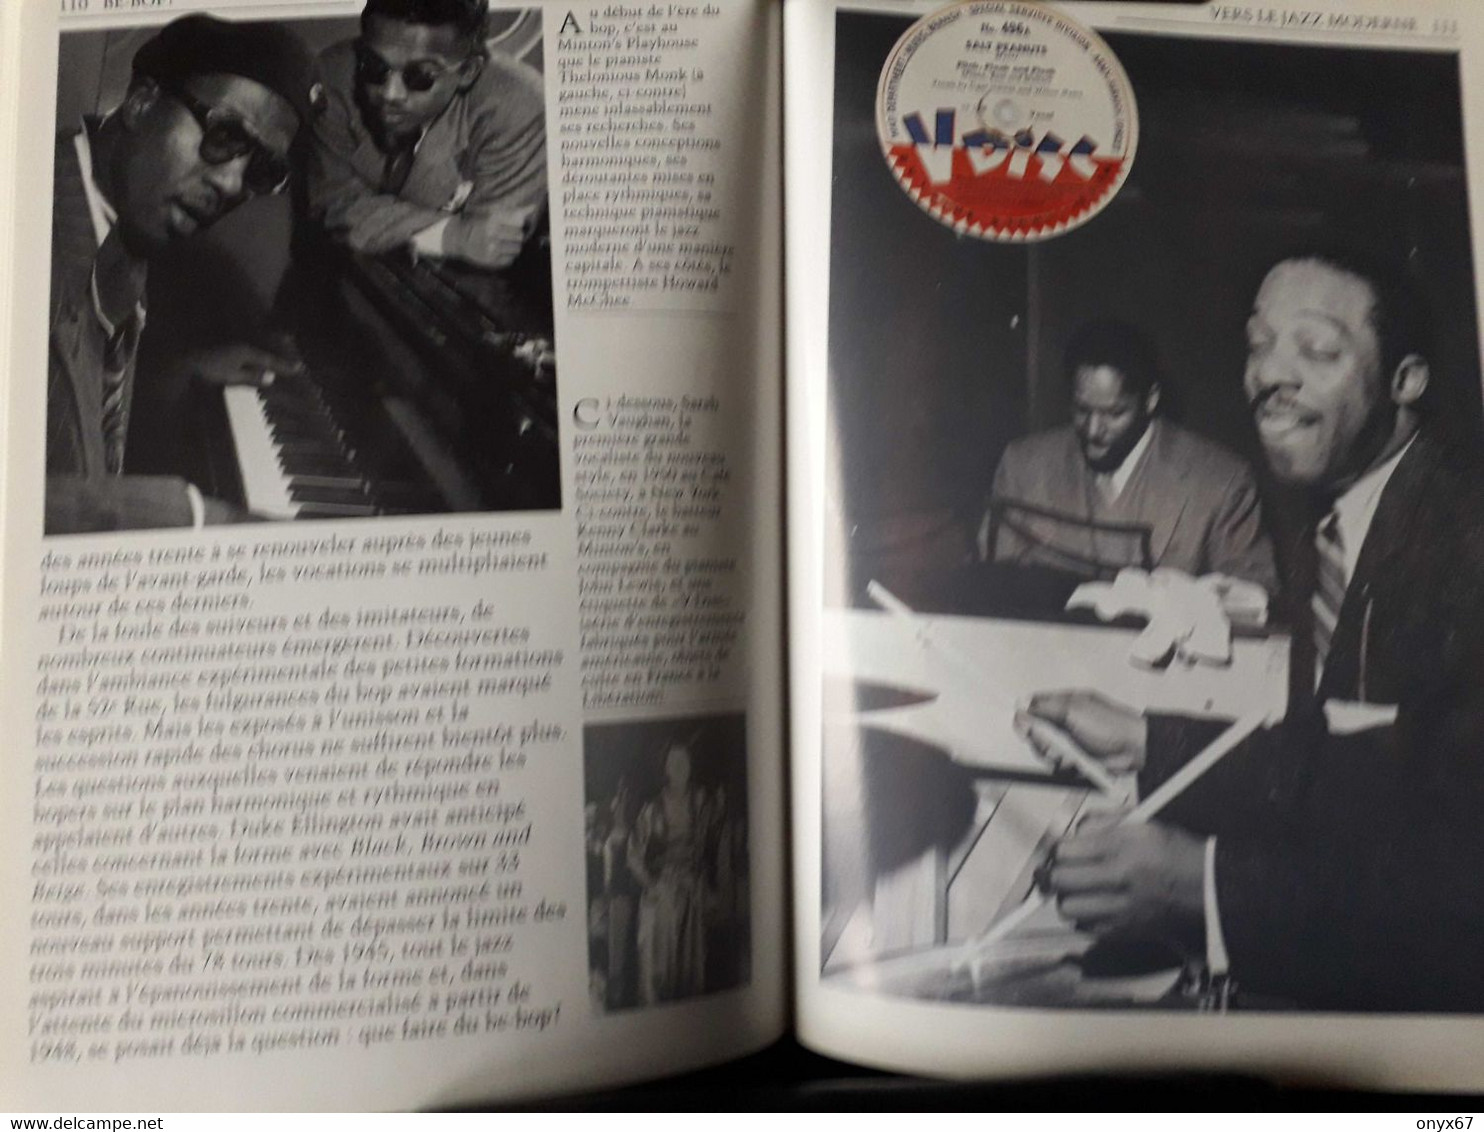 LIVRE MUSIQUE  Epopée du Jazz-1 du Blues au Bop-Photo couleur Noir et Blanc Découvertes Gallimard N°114  Novembre 1994